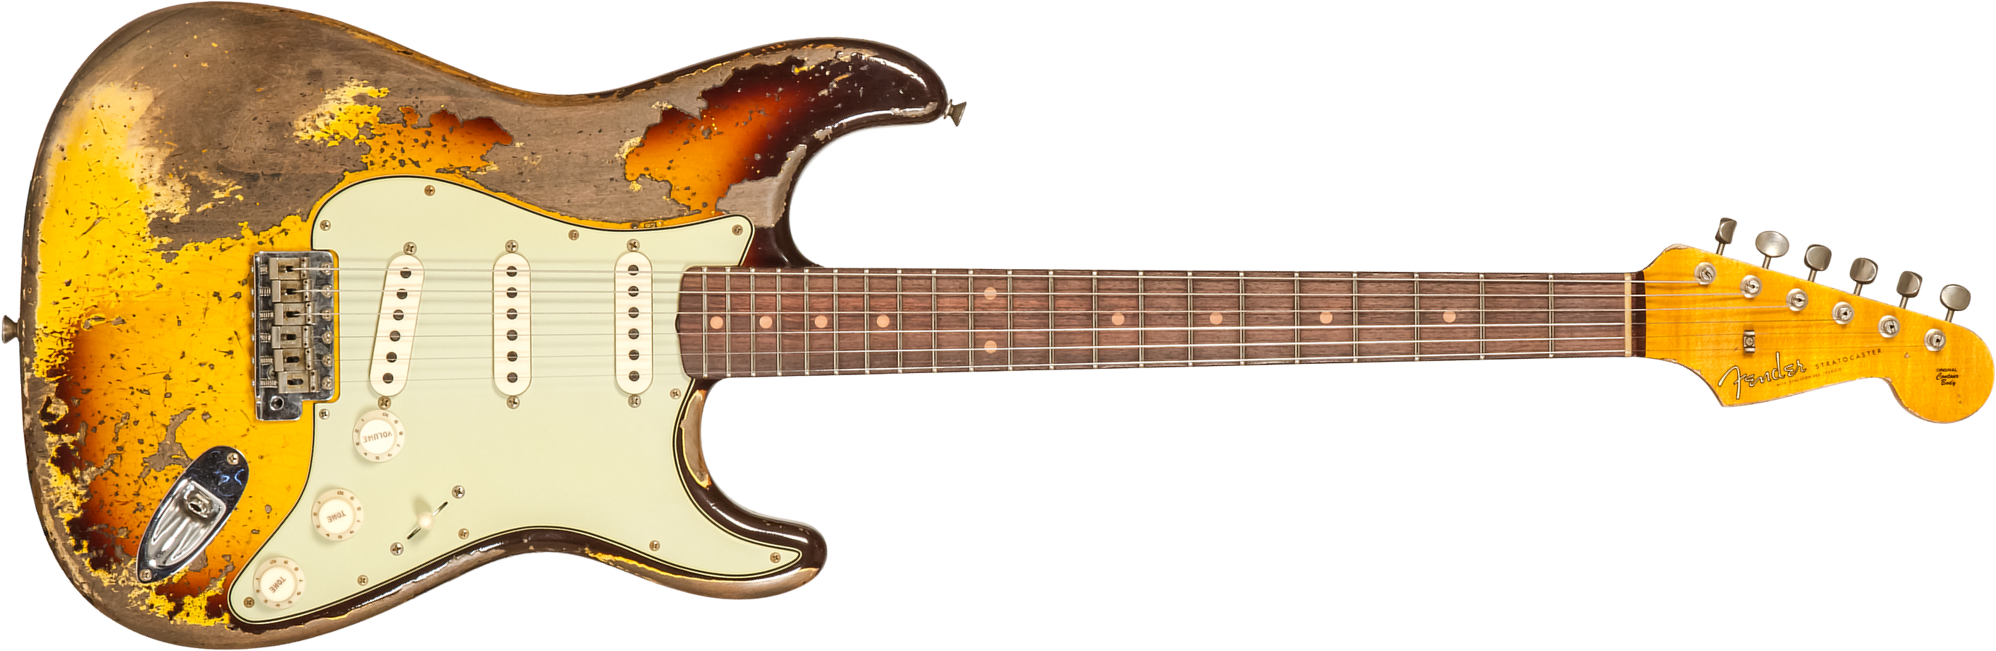 Fender Custom Shop Strat 1959 3s Trem Rw #cz569850 - Super Heavy Relic Aged Chocolate 3-color Sunburst - Guitare Électrique Forme Str - Main picture